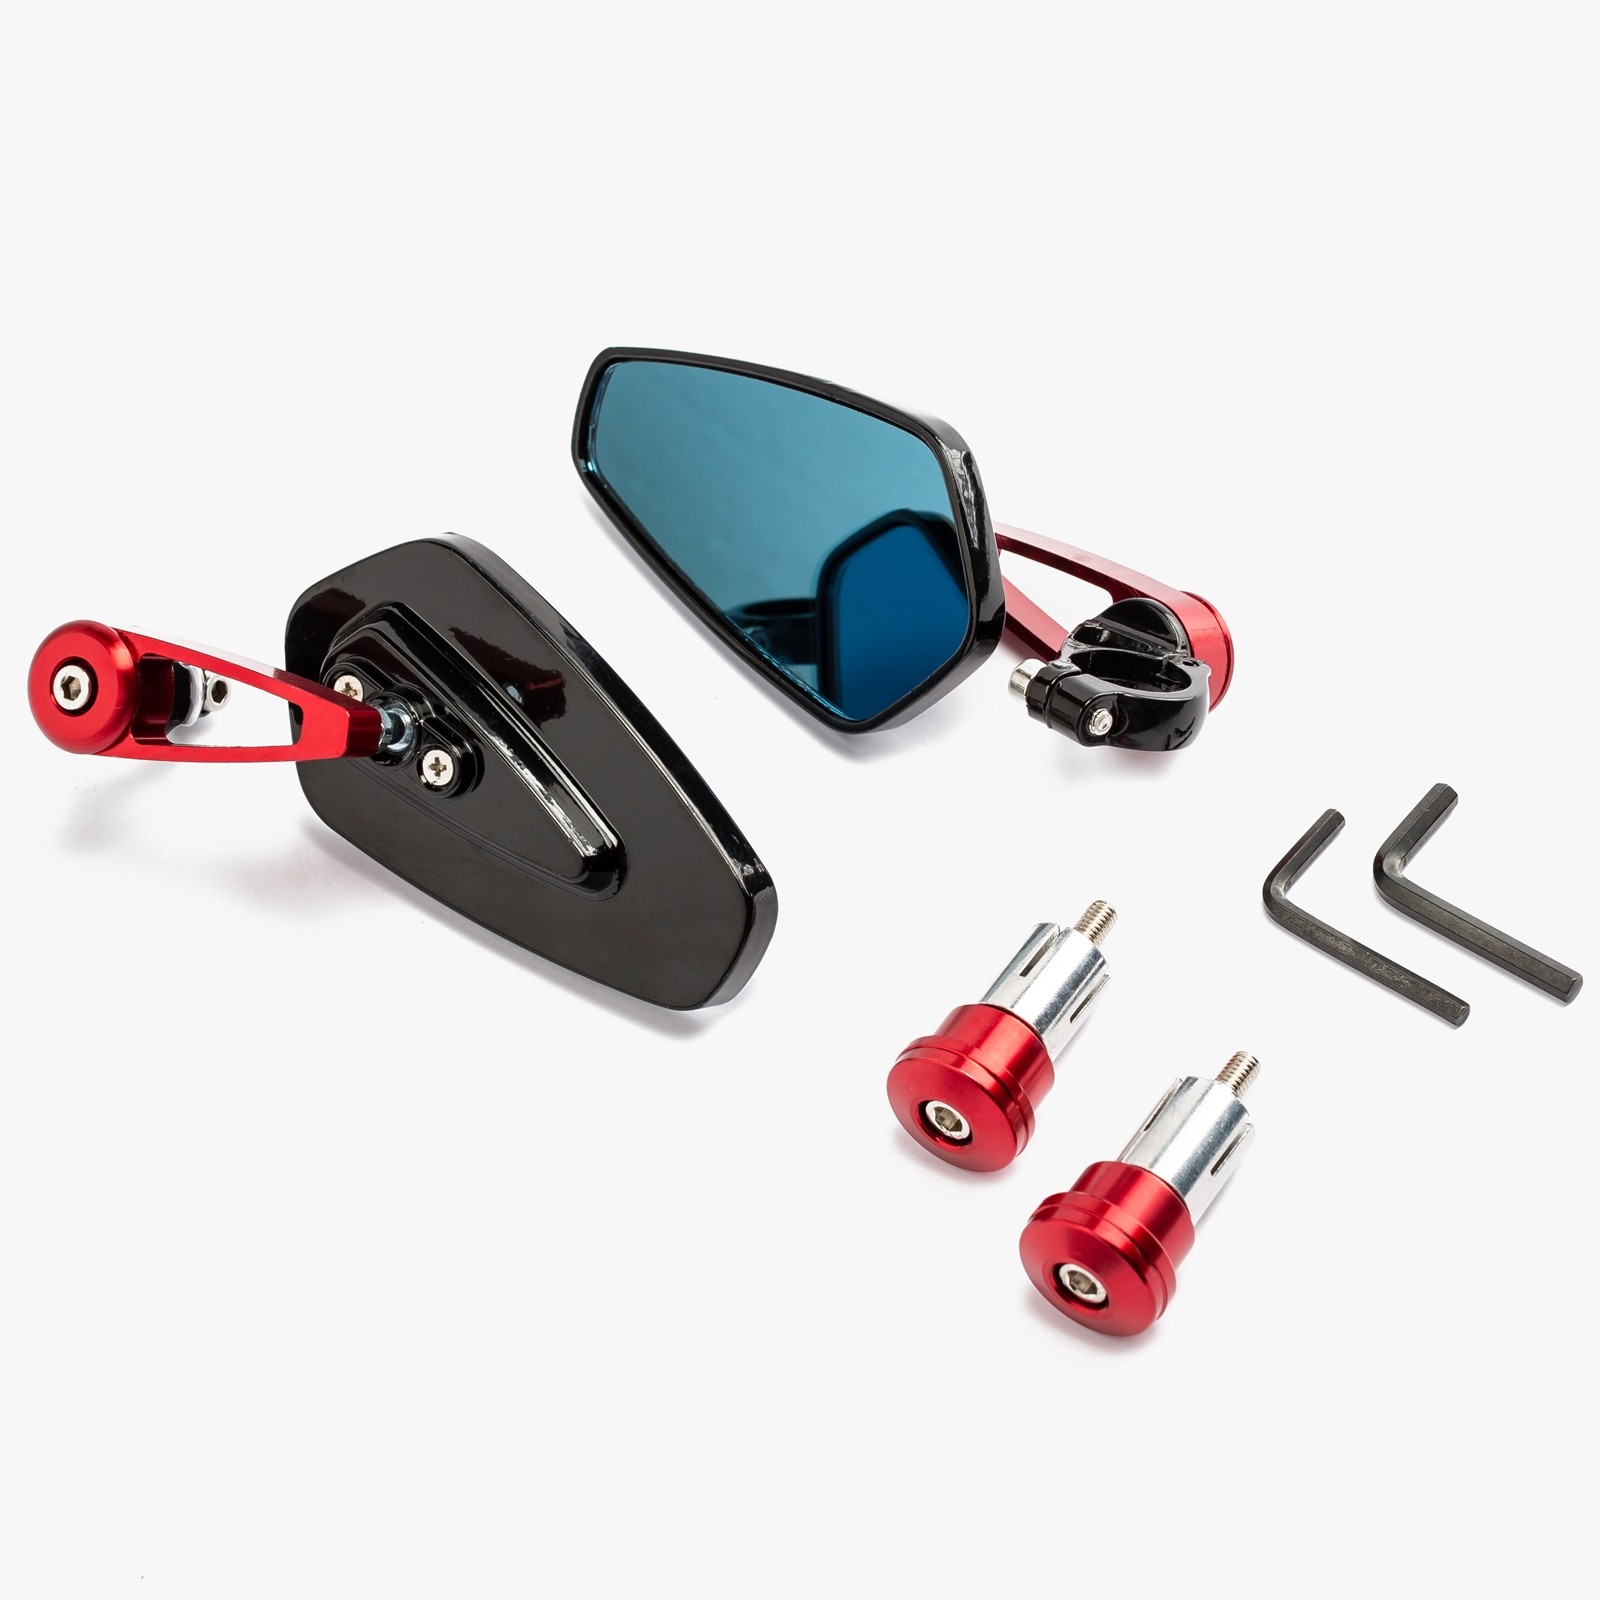 Abbigliamento Moto e Accessori - Specchietti 22mm Manubrio Moto Retrovisori  Metallo Universali Ovali Rosso